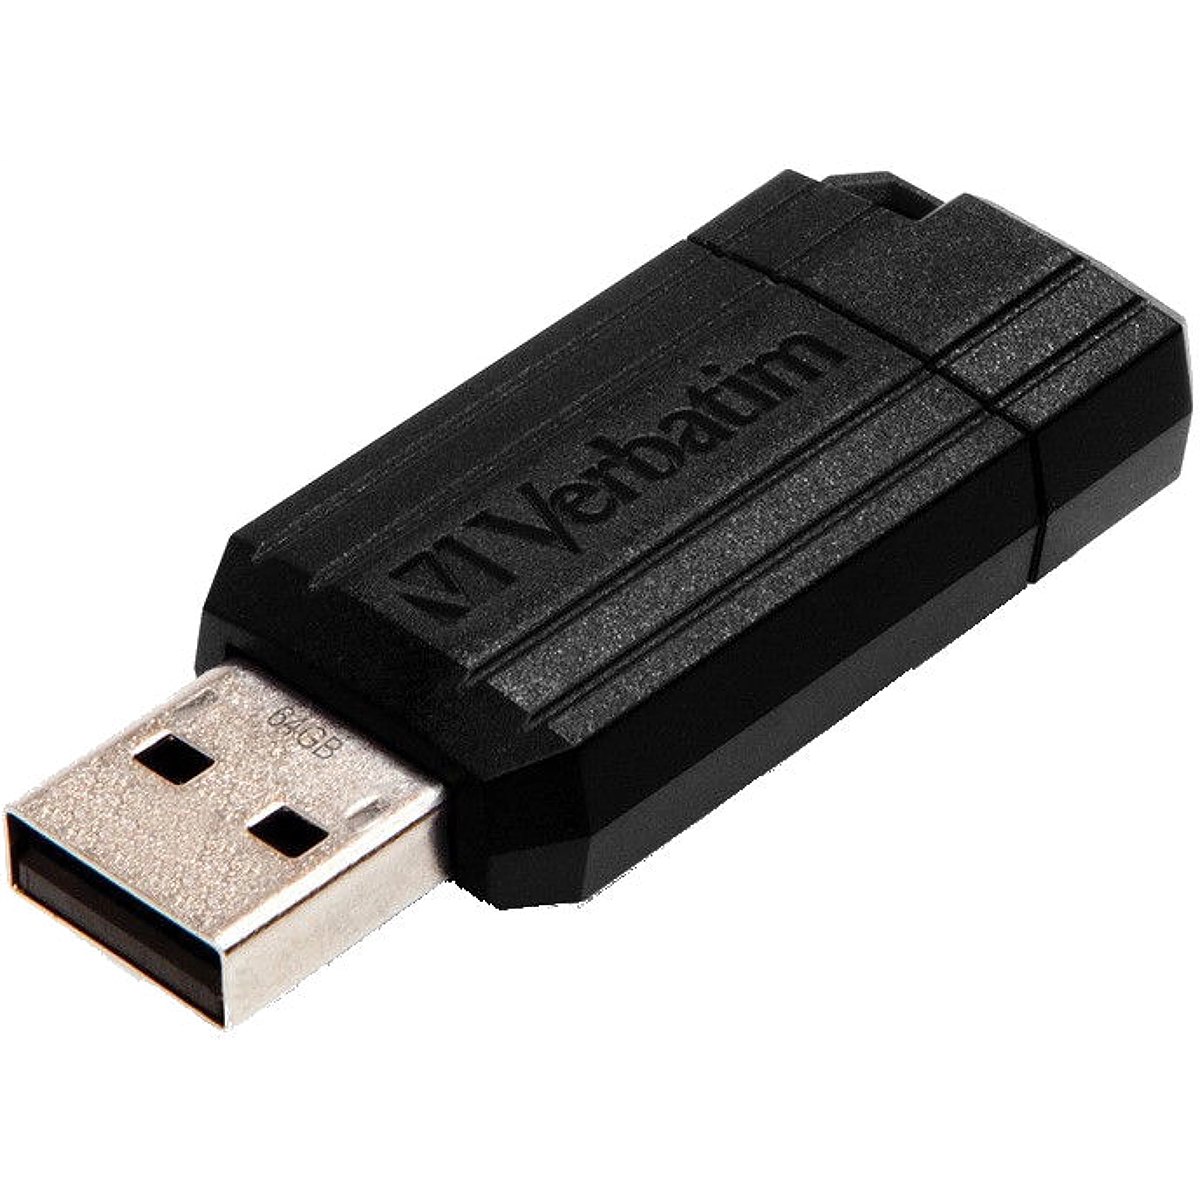 VERBATIM PINSTRIPE USB Stick 64GB USB2.0